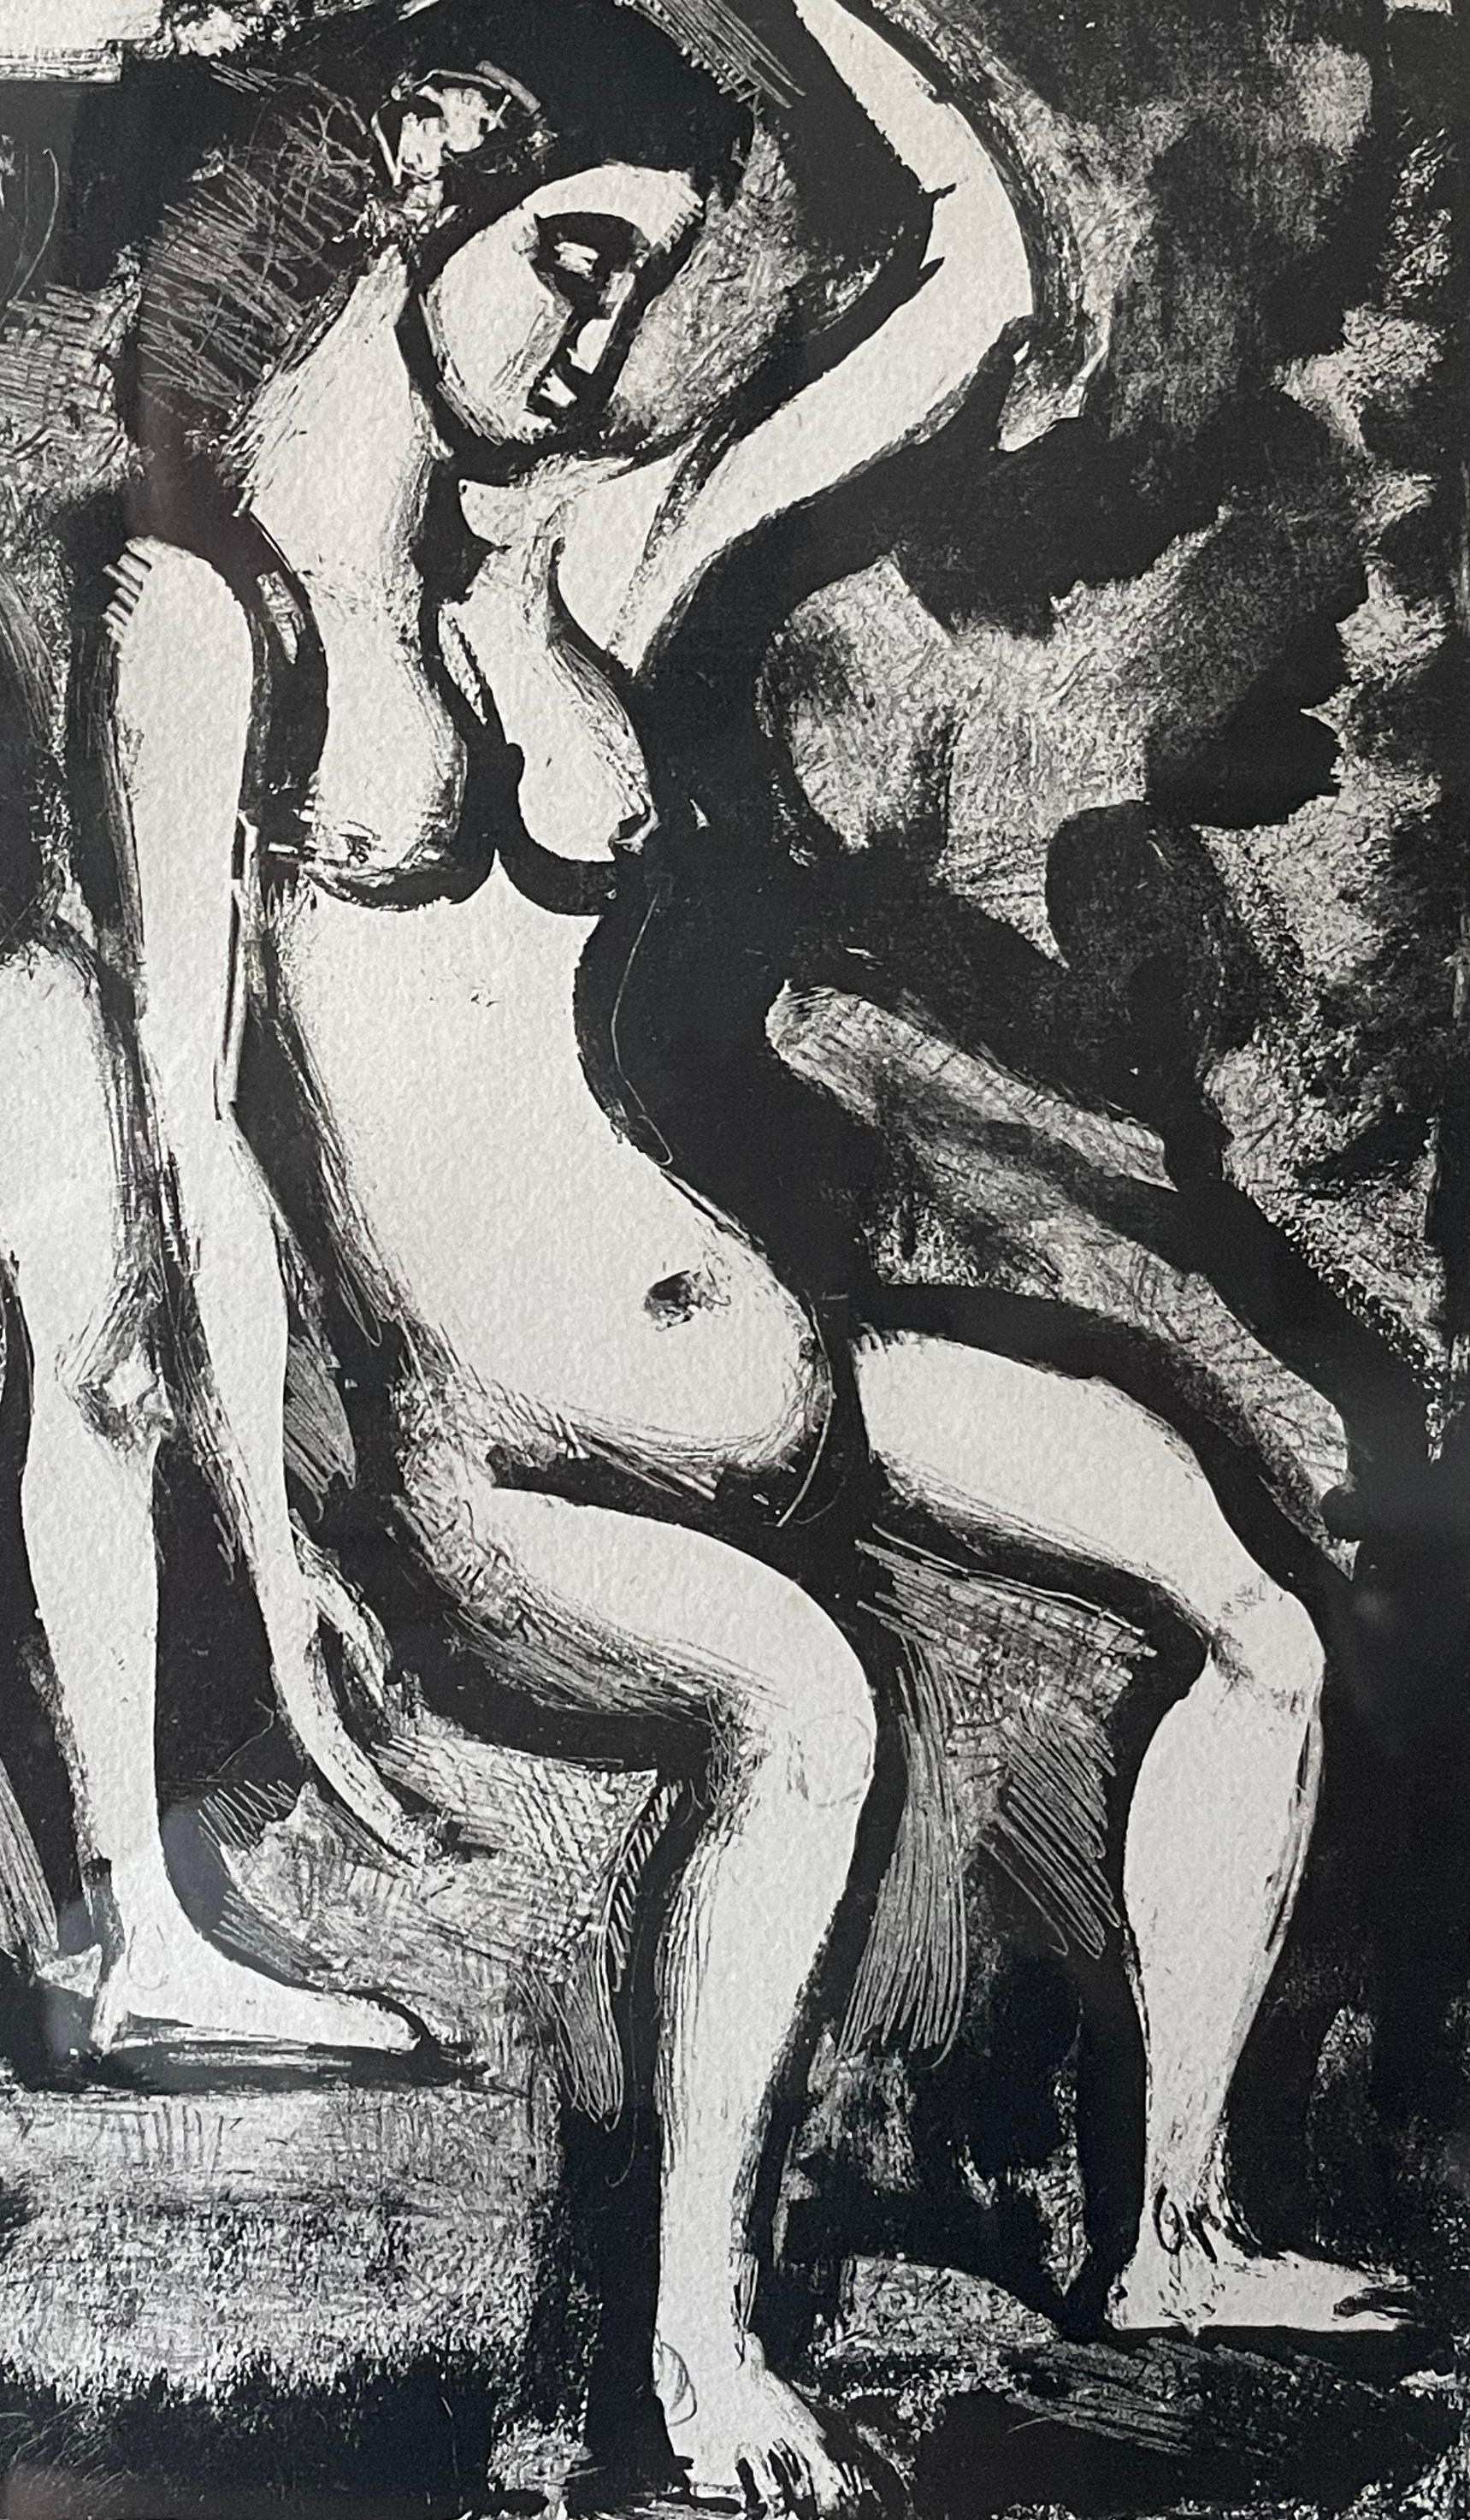 Les Fleurs du Mal, Georges Rouault, 1933

Lithographie de Georges Rouault, grand peintre expressionniste français de l'Ecole de Paris (avec Modigliani, Picasso, Braque, Matisse...). Cette lithographie est une illustration des Fleurs du Mal de